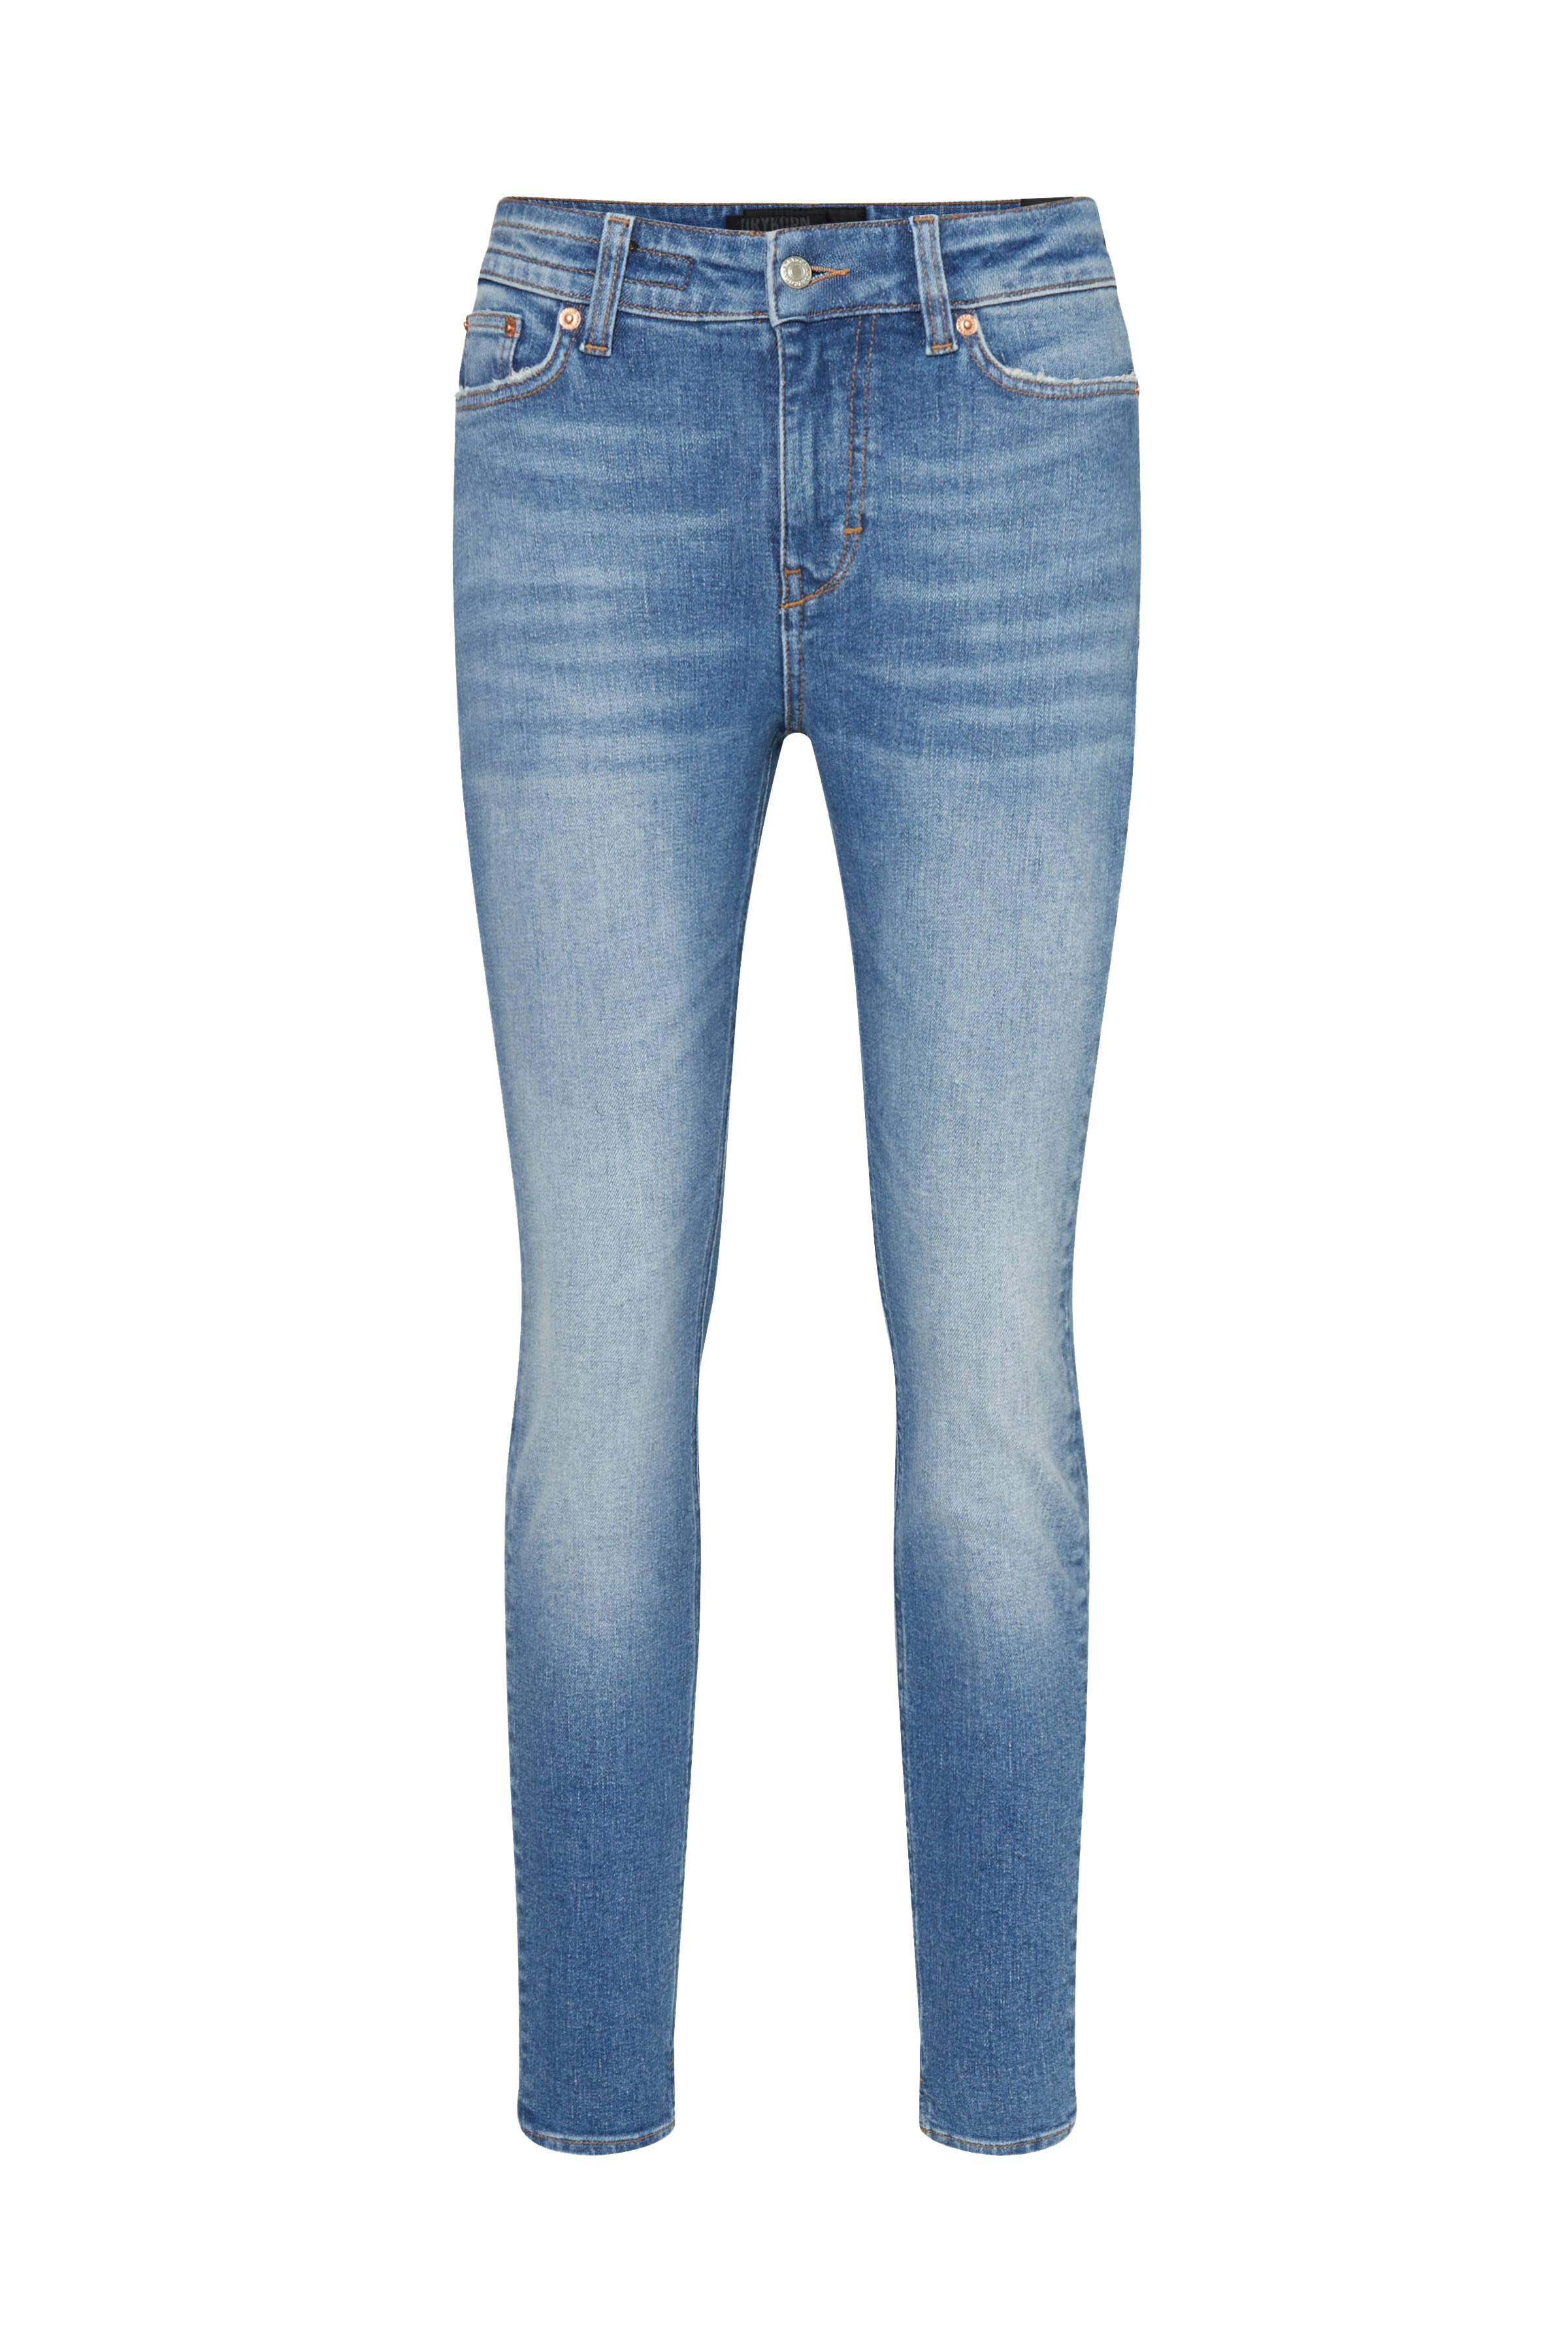 Low-waist skinny jeans in super-stretch denim with hemp